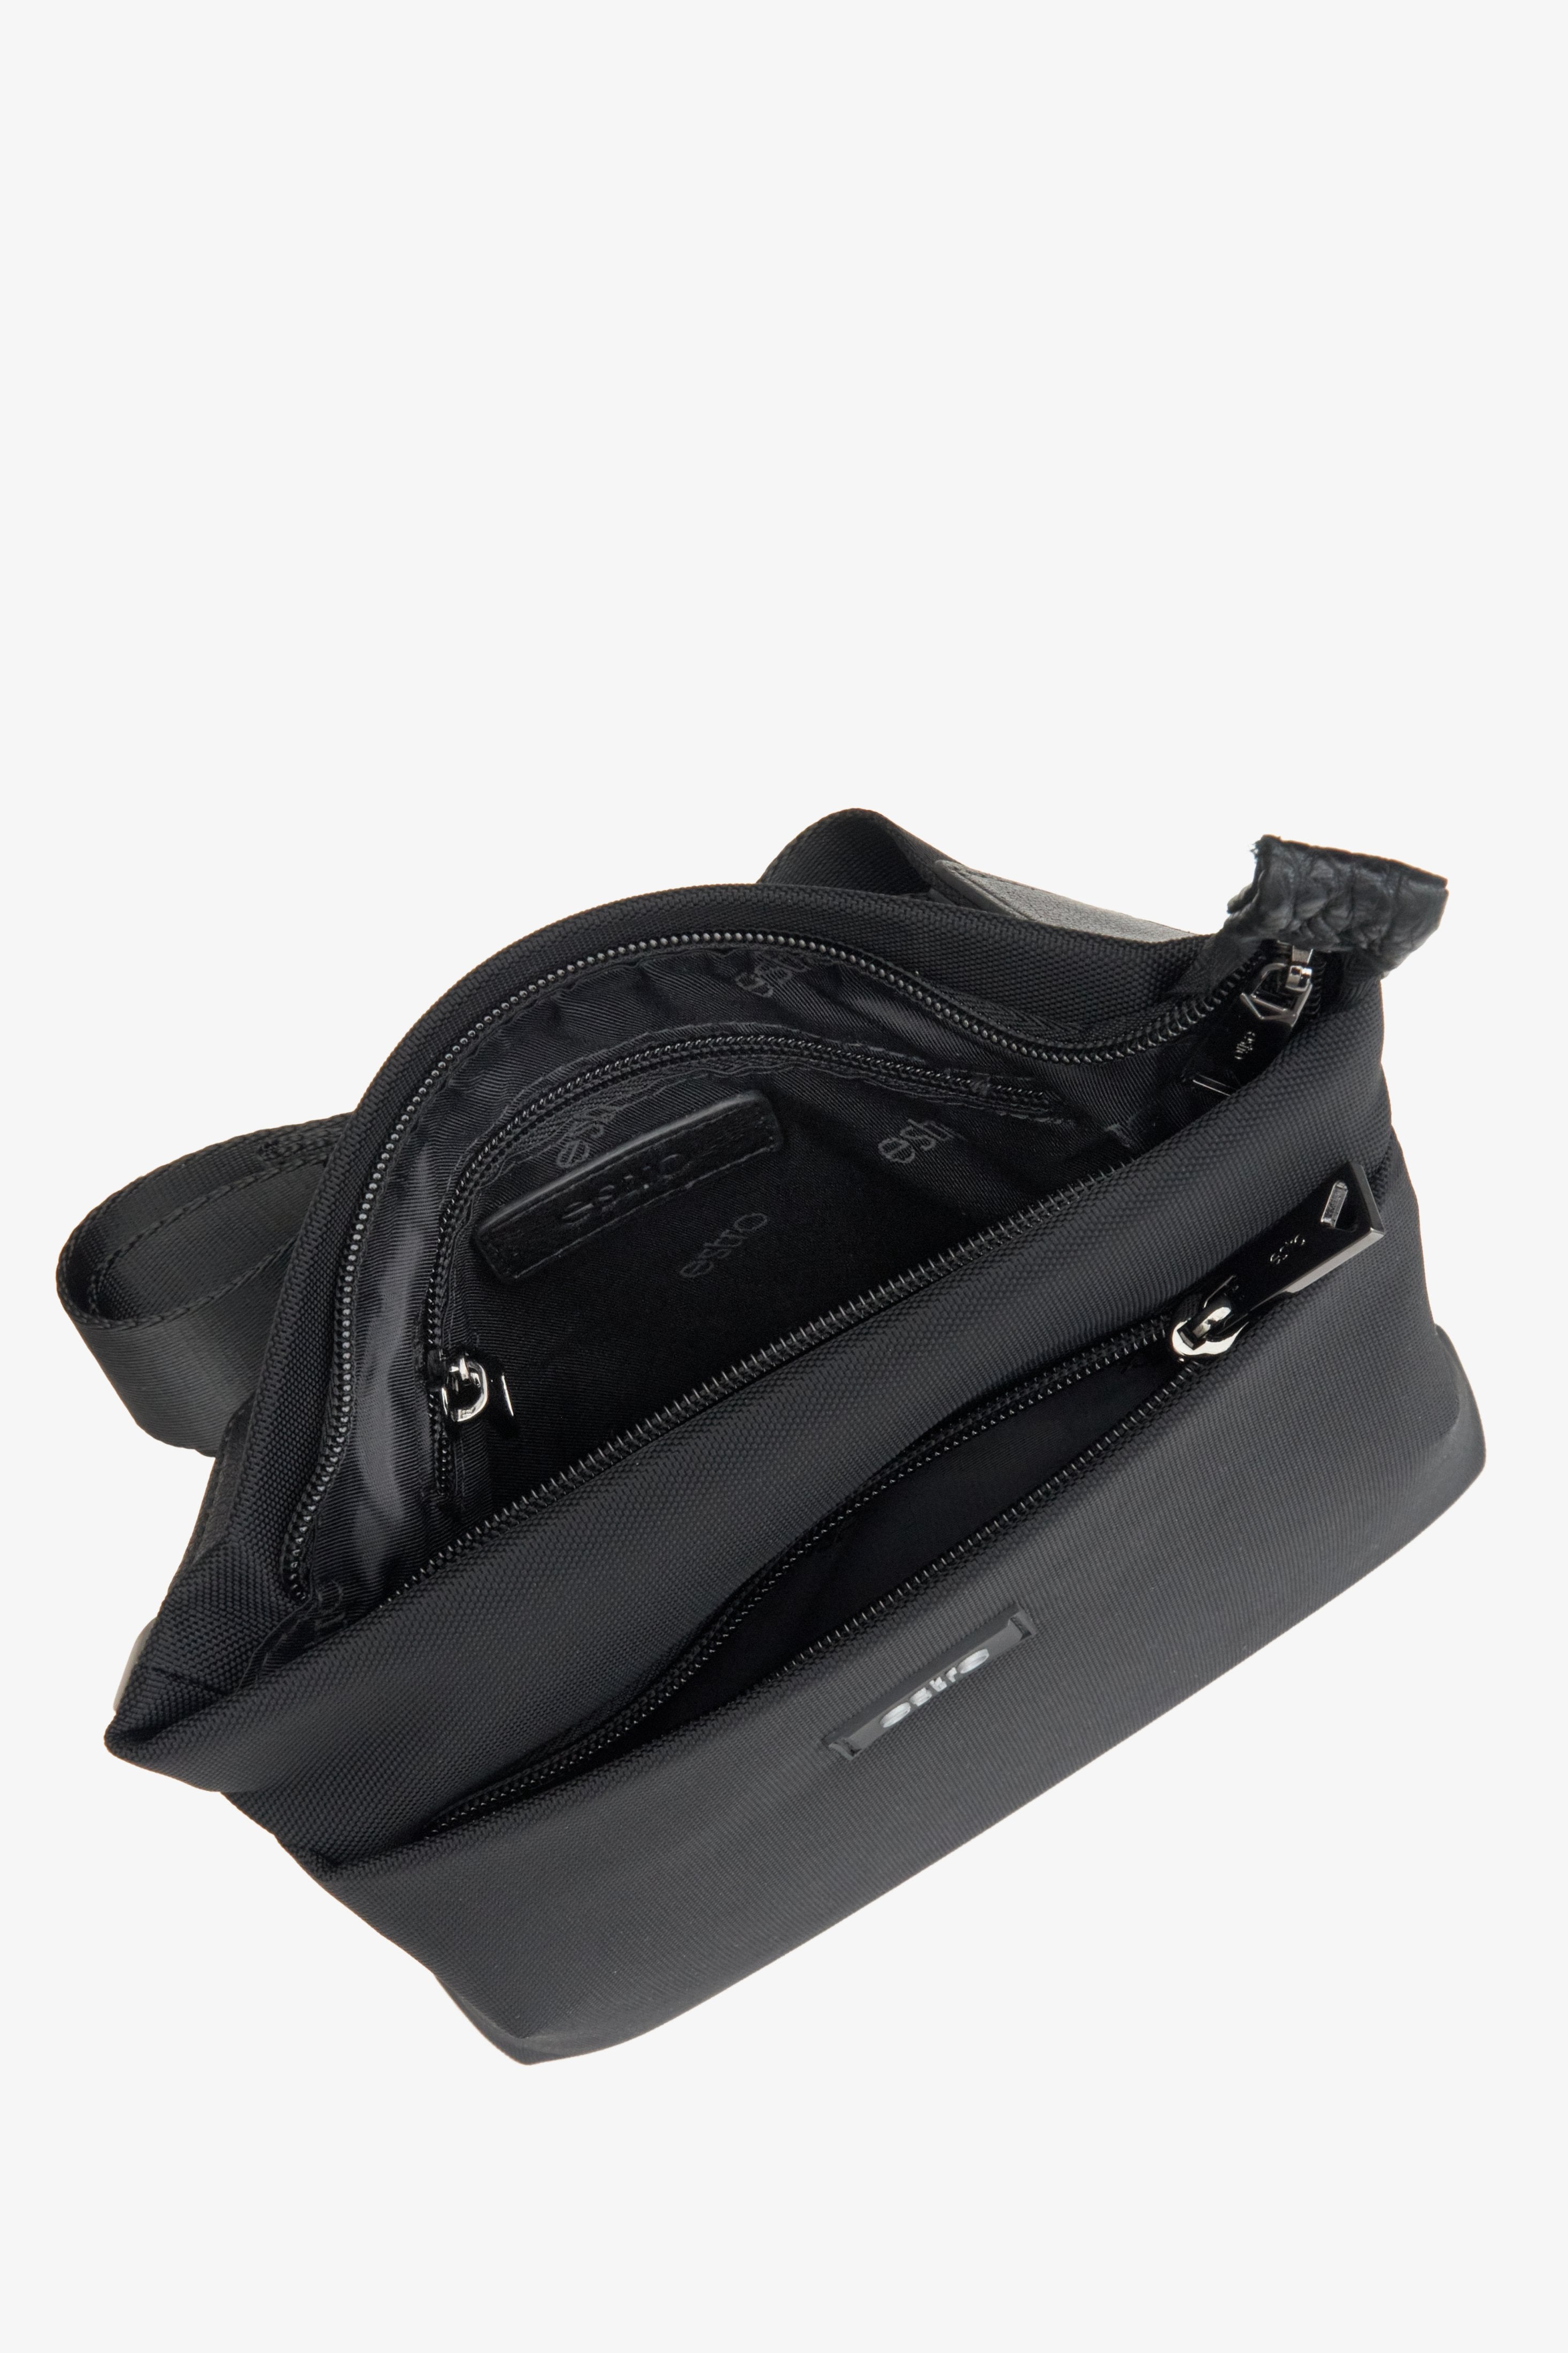 Czarna tekstylna torba męska z regulowanym paskiem Estro  - zbliżenie na wnętrze.